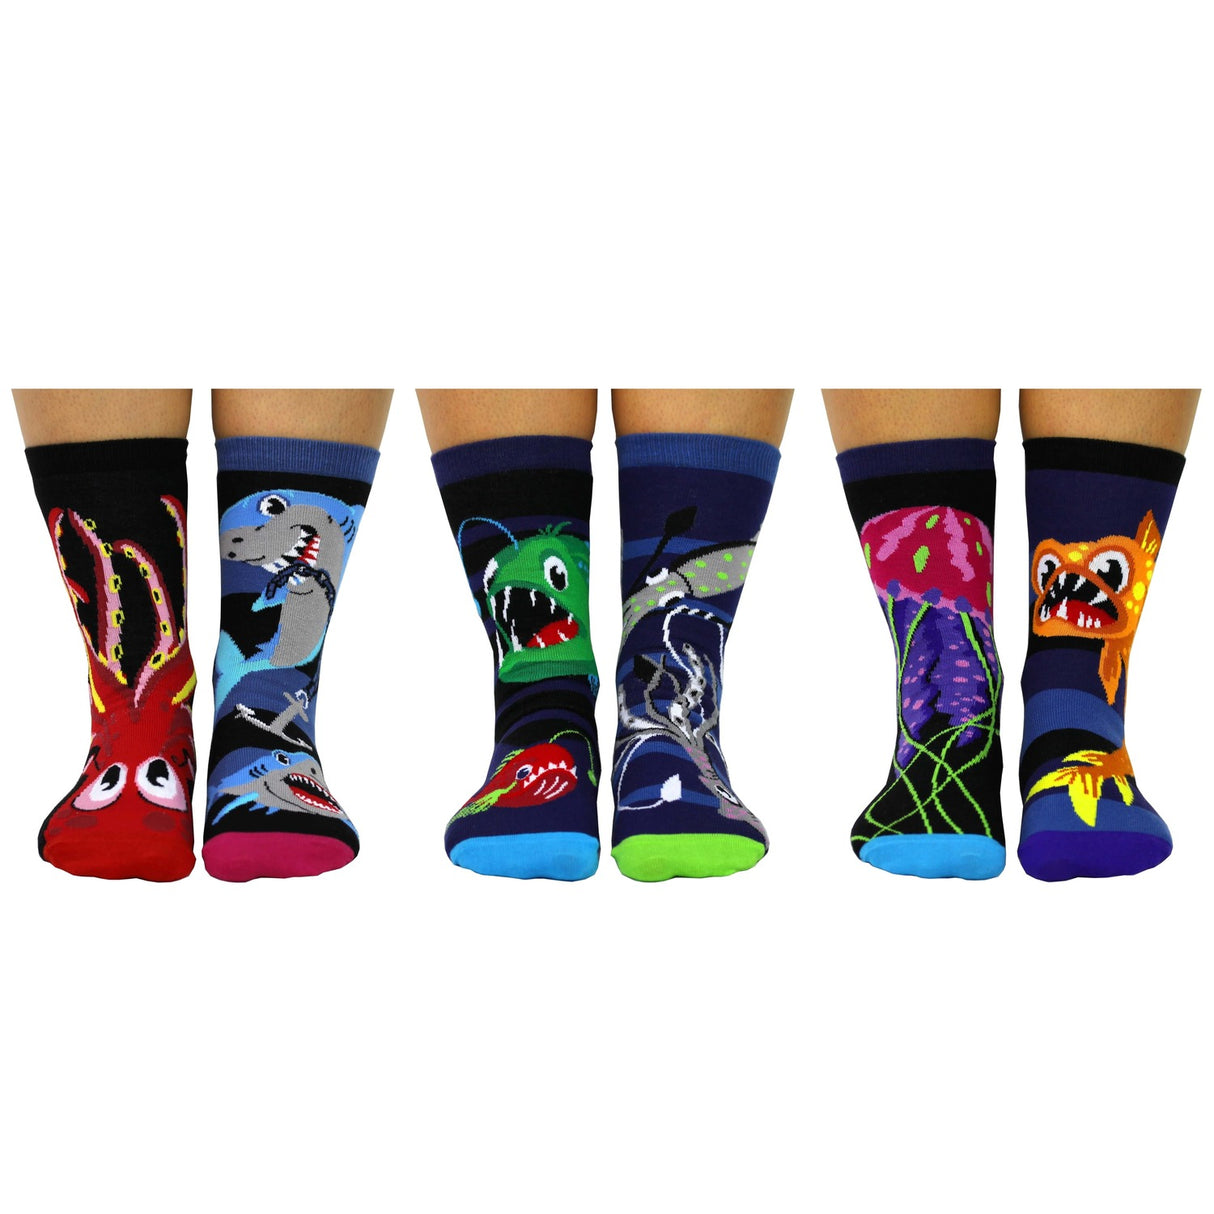 Socks of the Deep: 6 Oddsocks mit Meerestieren | Jetzt kaufen! –